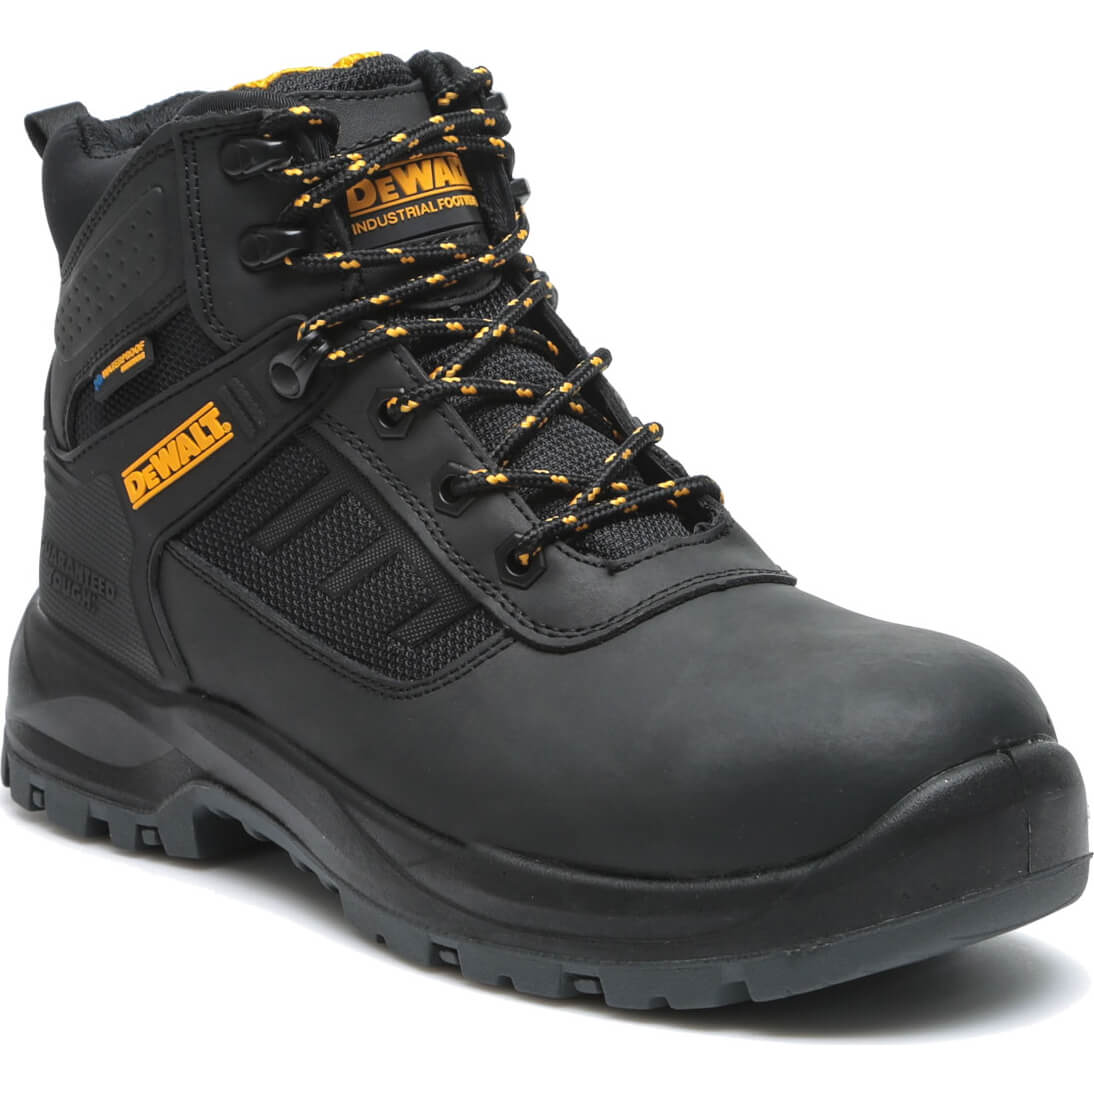 Photos - Safety Equipment DeWALT Douglas Waterproof Safety Boots Black Size 10 